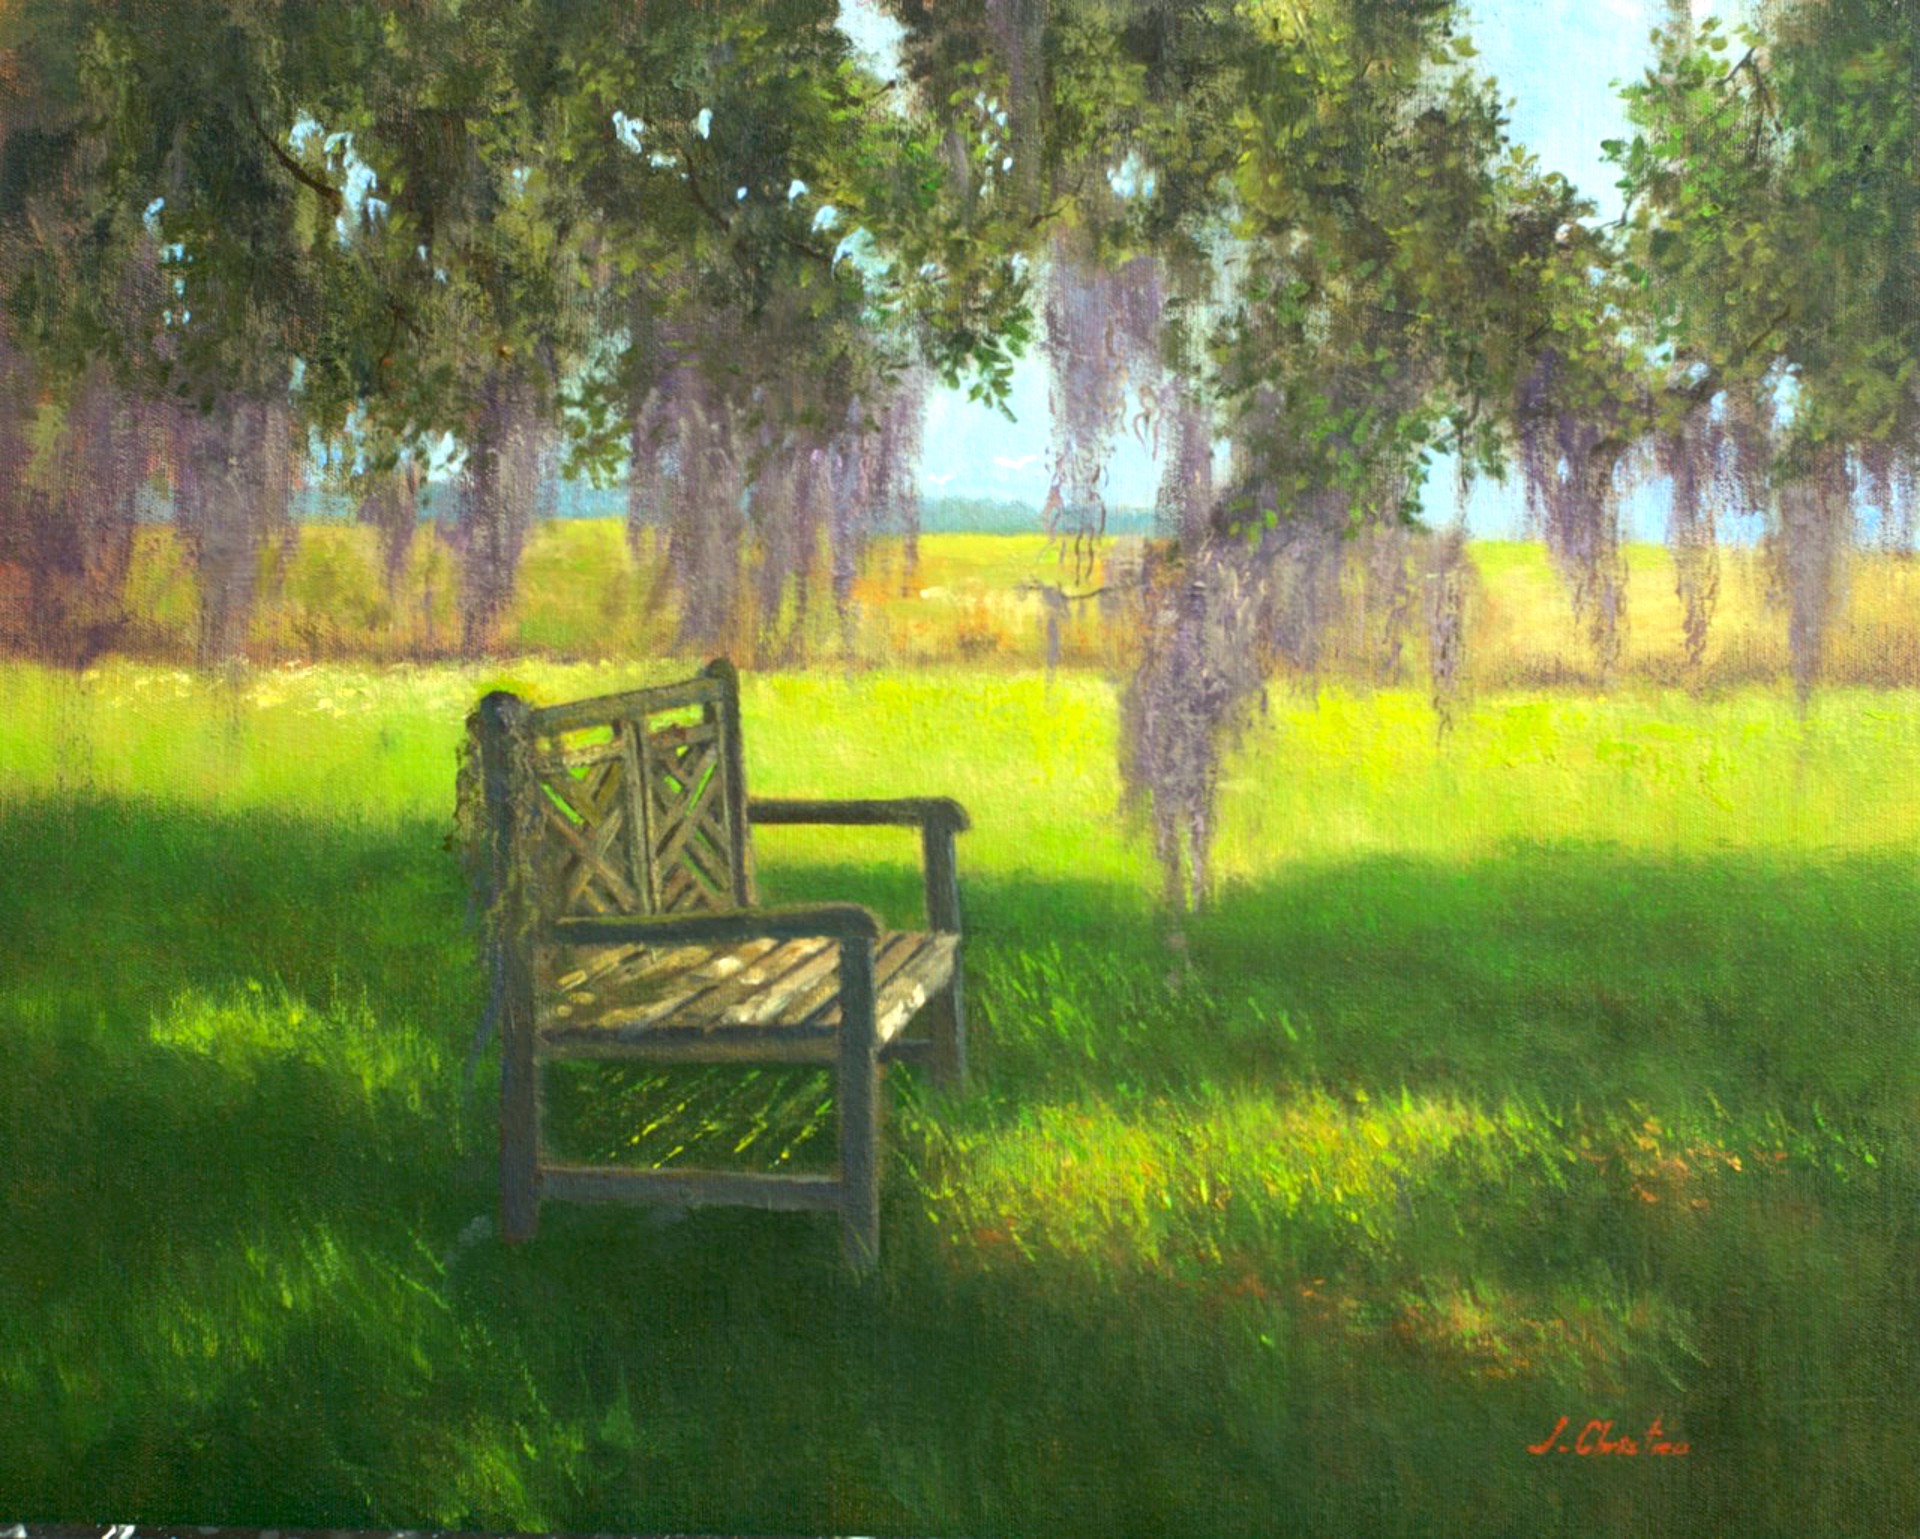 Under the Rosey Oak by J. Christian Snedeker